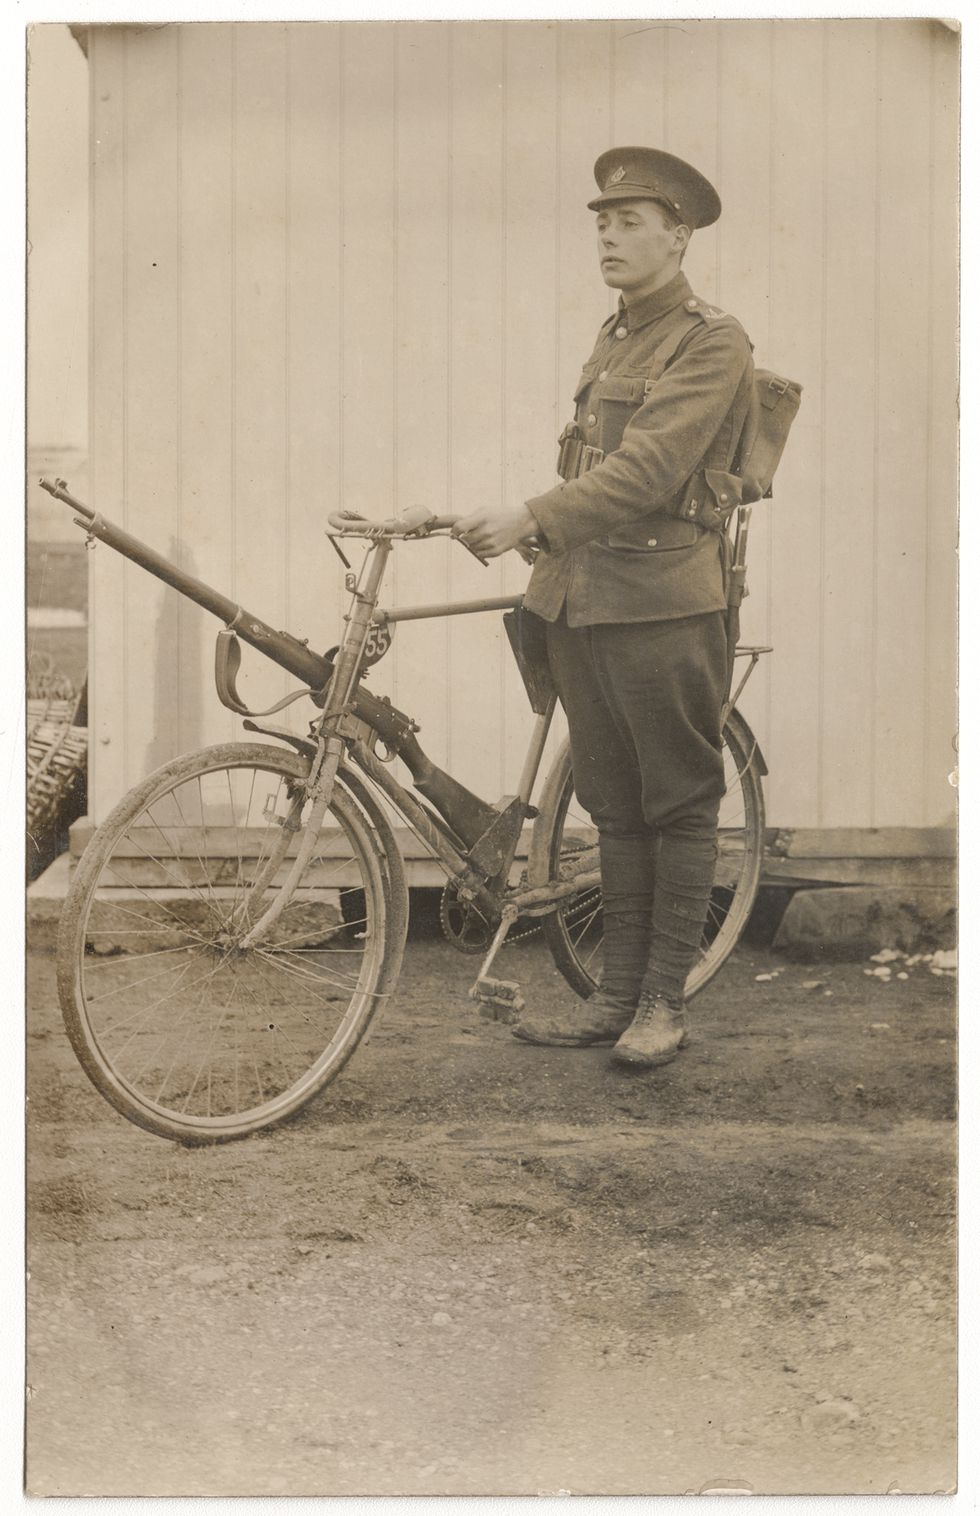 你知道自行车在一战中有多重要吗?竟还有专门军队